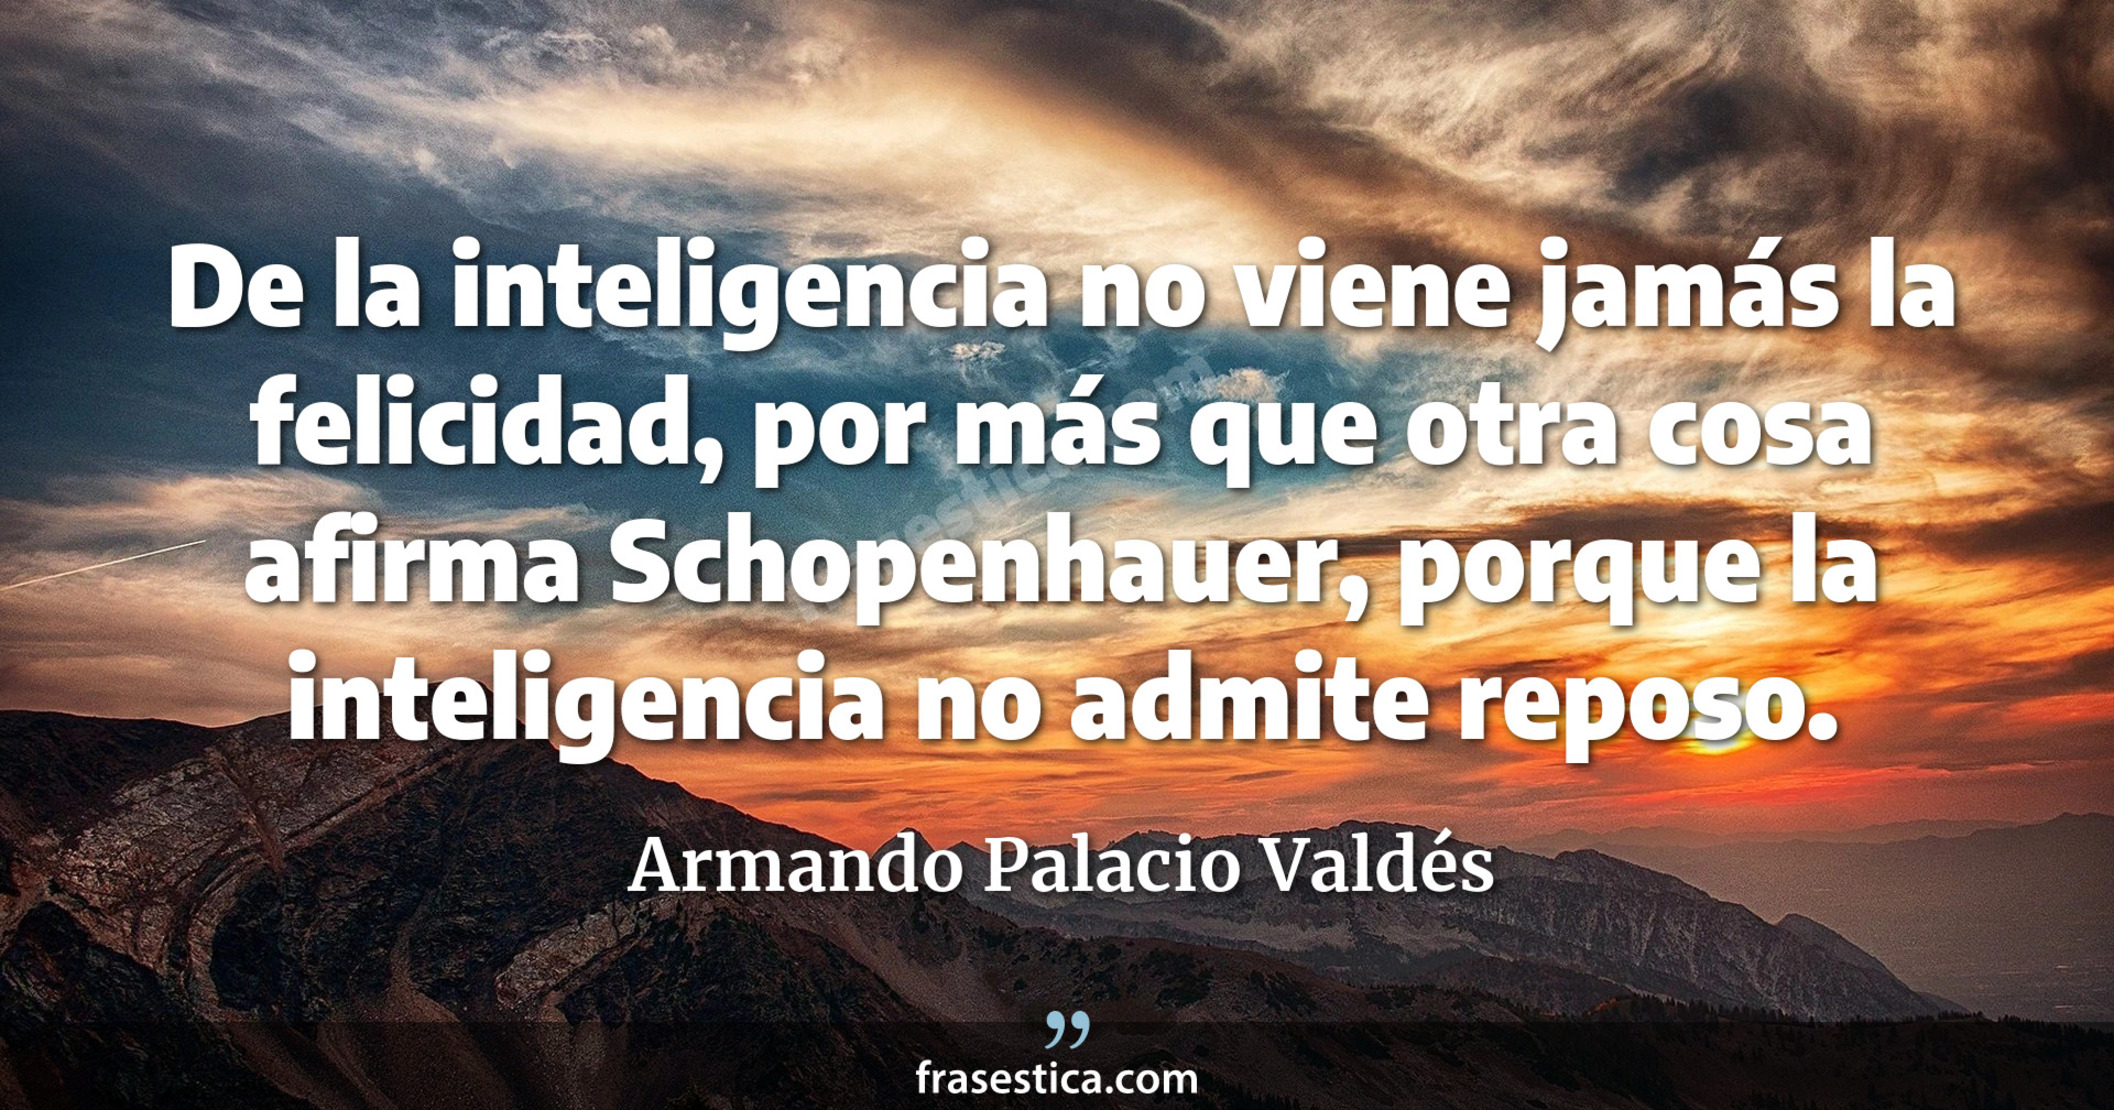 De la inteligencia no viene jamás la felicidad, por más que otra cosa afirma Schopenhauer, porque la inteligencia no admite reposo. - Armando Palacio Valdés